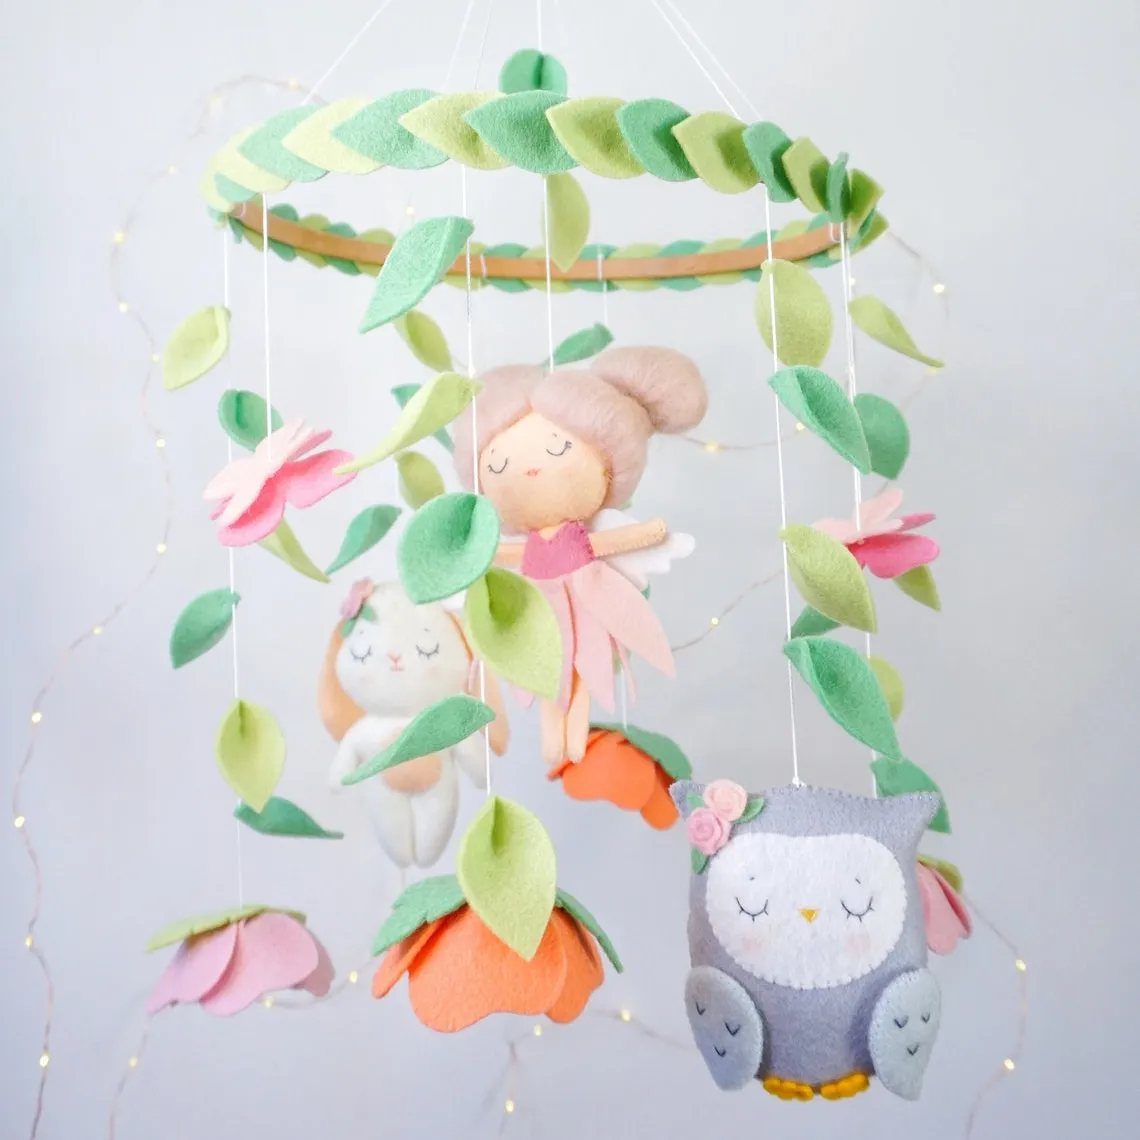 100% Handmade Felt Fairy Holz Musical Baby mobiles with fairy bunny and owl Stuffed Nursery Crib mobile for Baby Girl